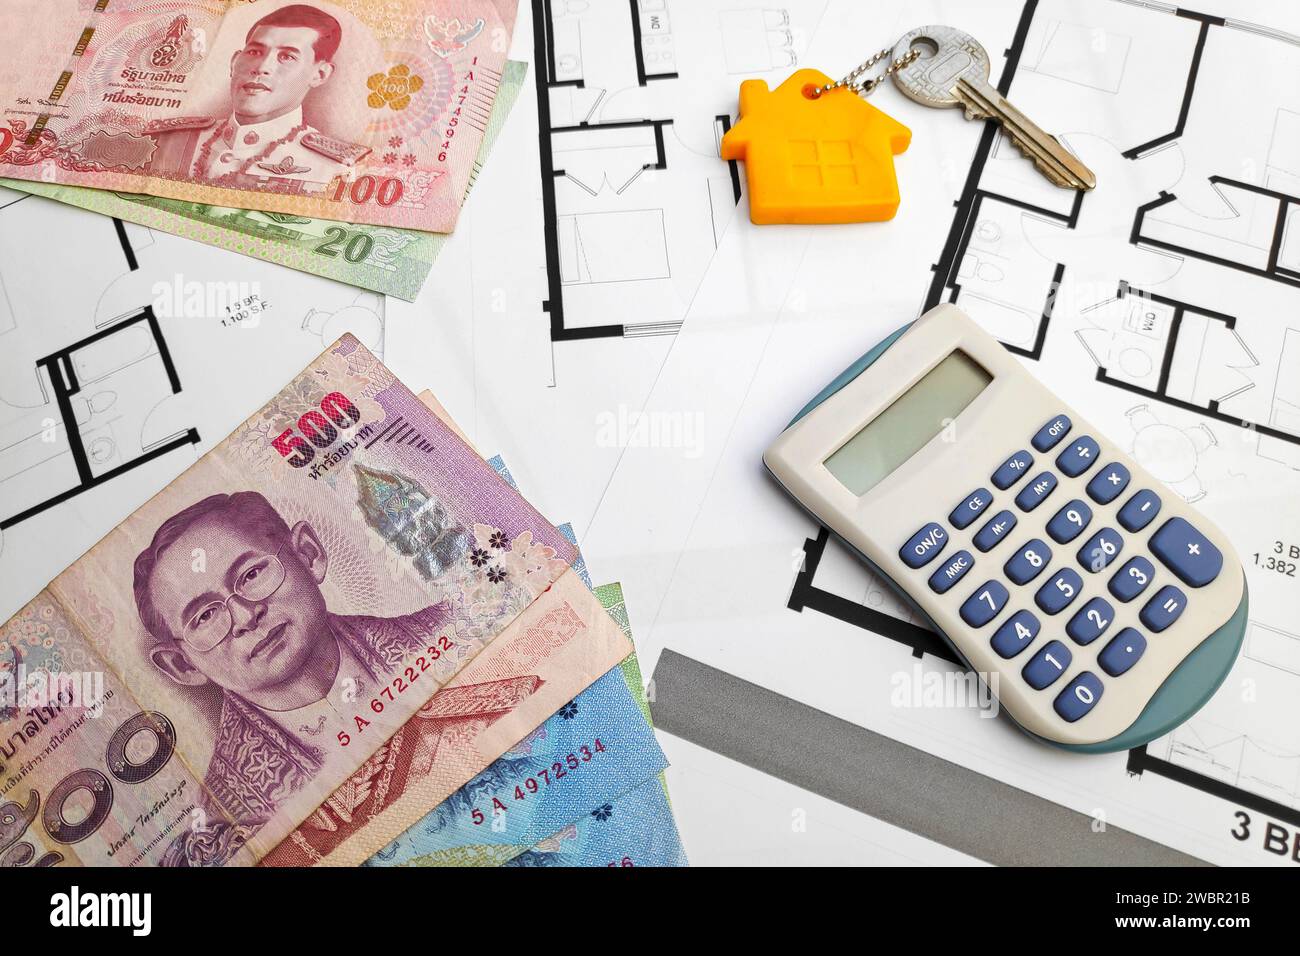 Nahaufnahme einiger thailändischer Baht-Banknoten, eines Hausschlüssels und eines Taschenrechners oben auf den Bauplänen. Stockfoto